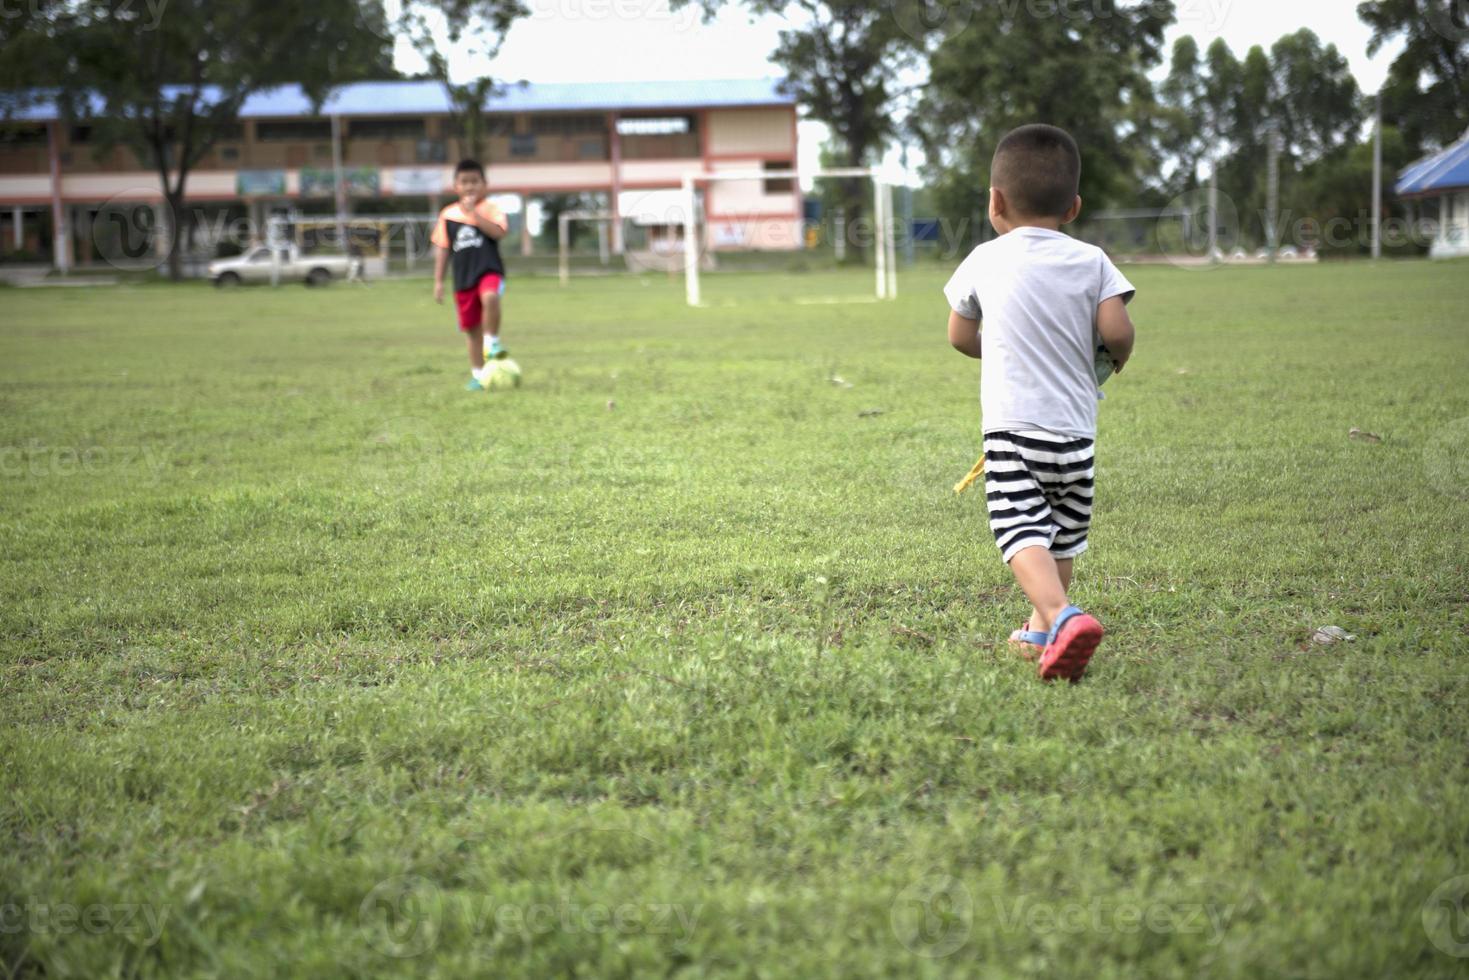 Junge, der auf einem Fußballplatz einen Fußball in der Hand hält, kleine Kinder wollen Fußball spielen